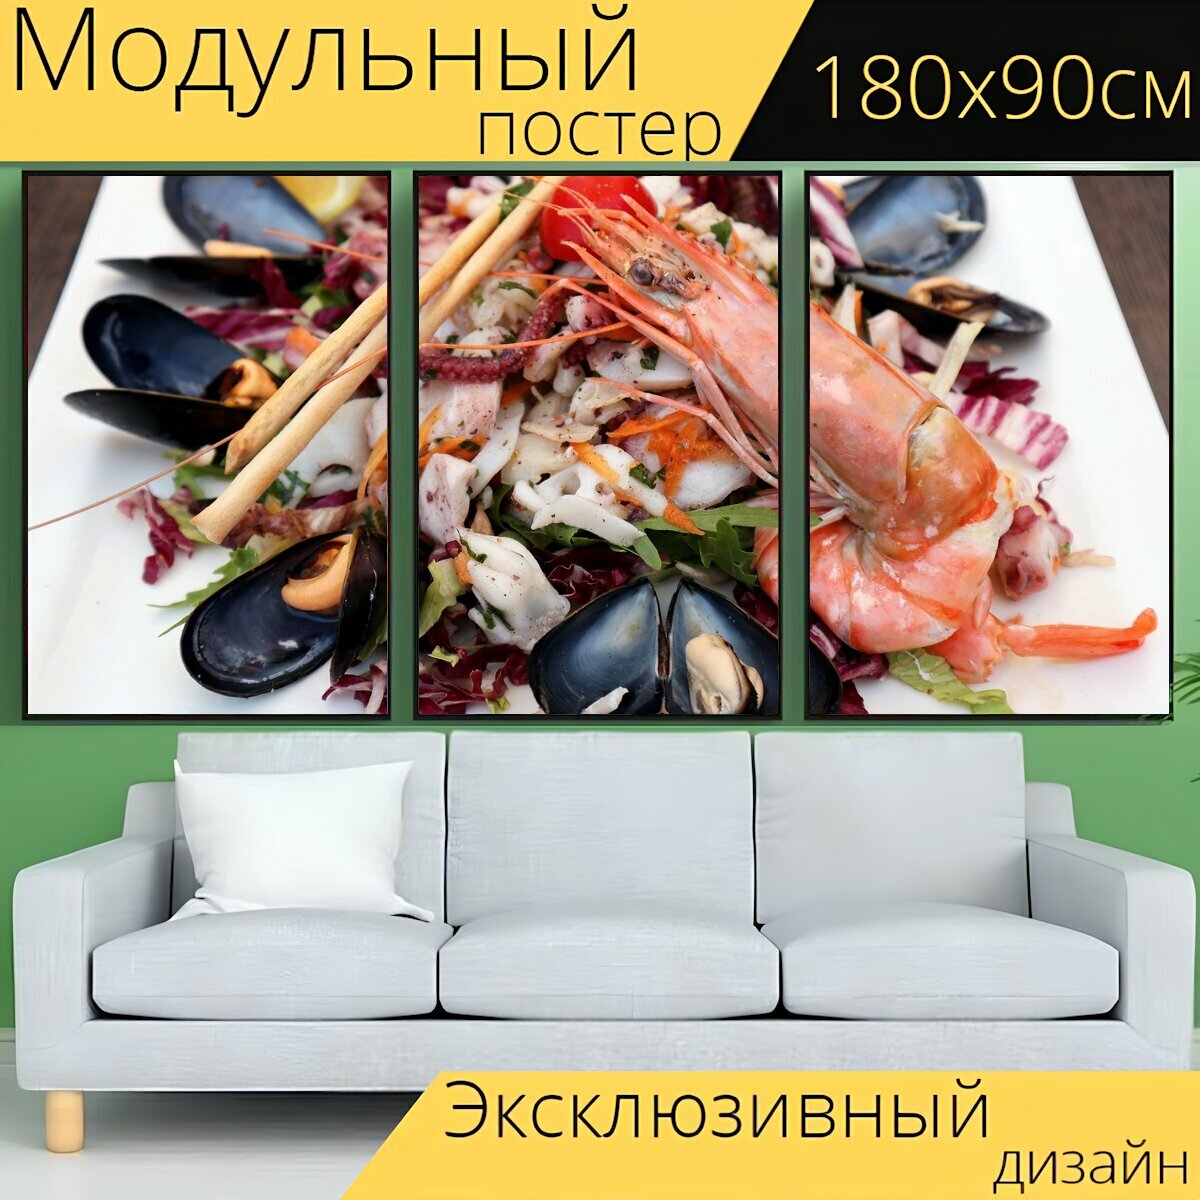 Модульный постер "Моллюски, креветка, морепродукты" 180 x 90 см. для интерьера